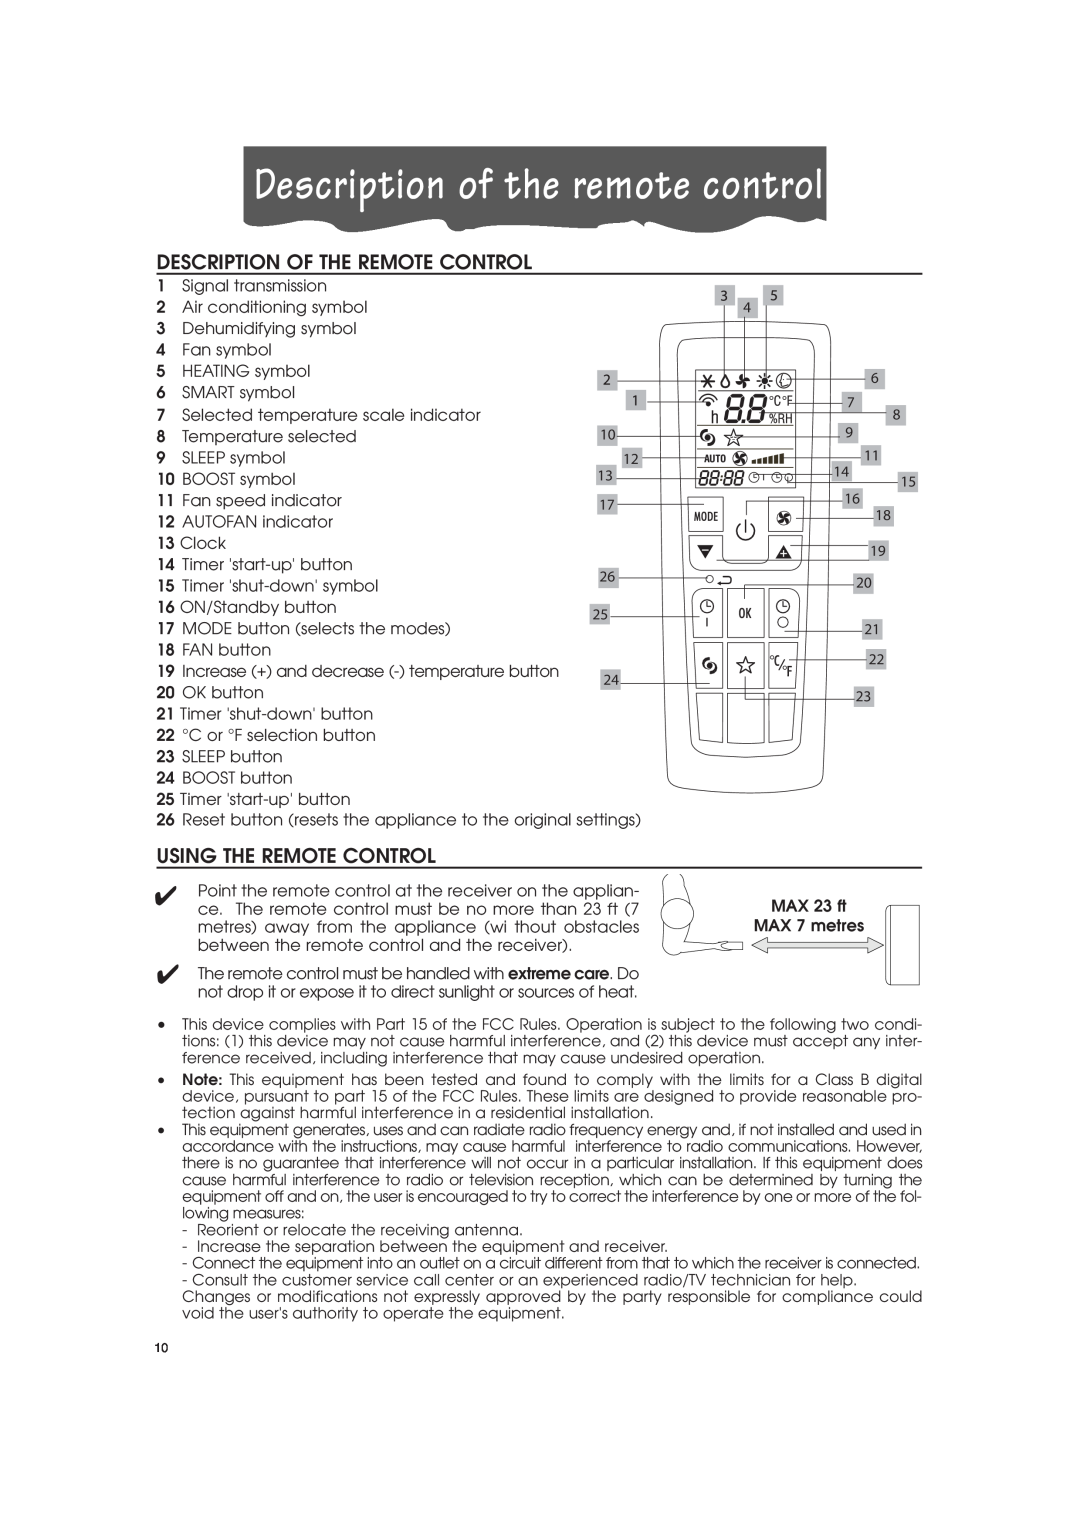 DeLonghi PAC-A130HPE Description of the remote control, Description Of The Remote Control, Using The Remote Control 